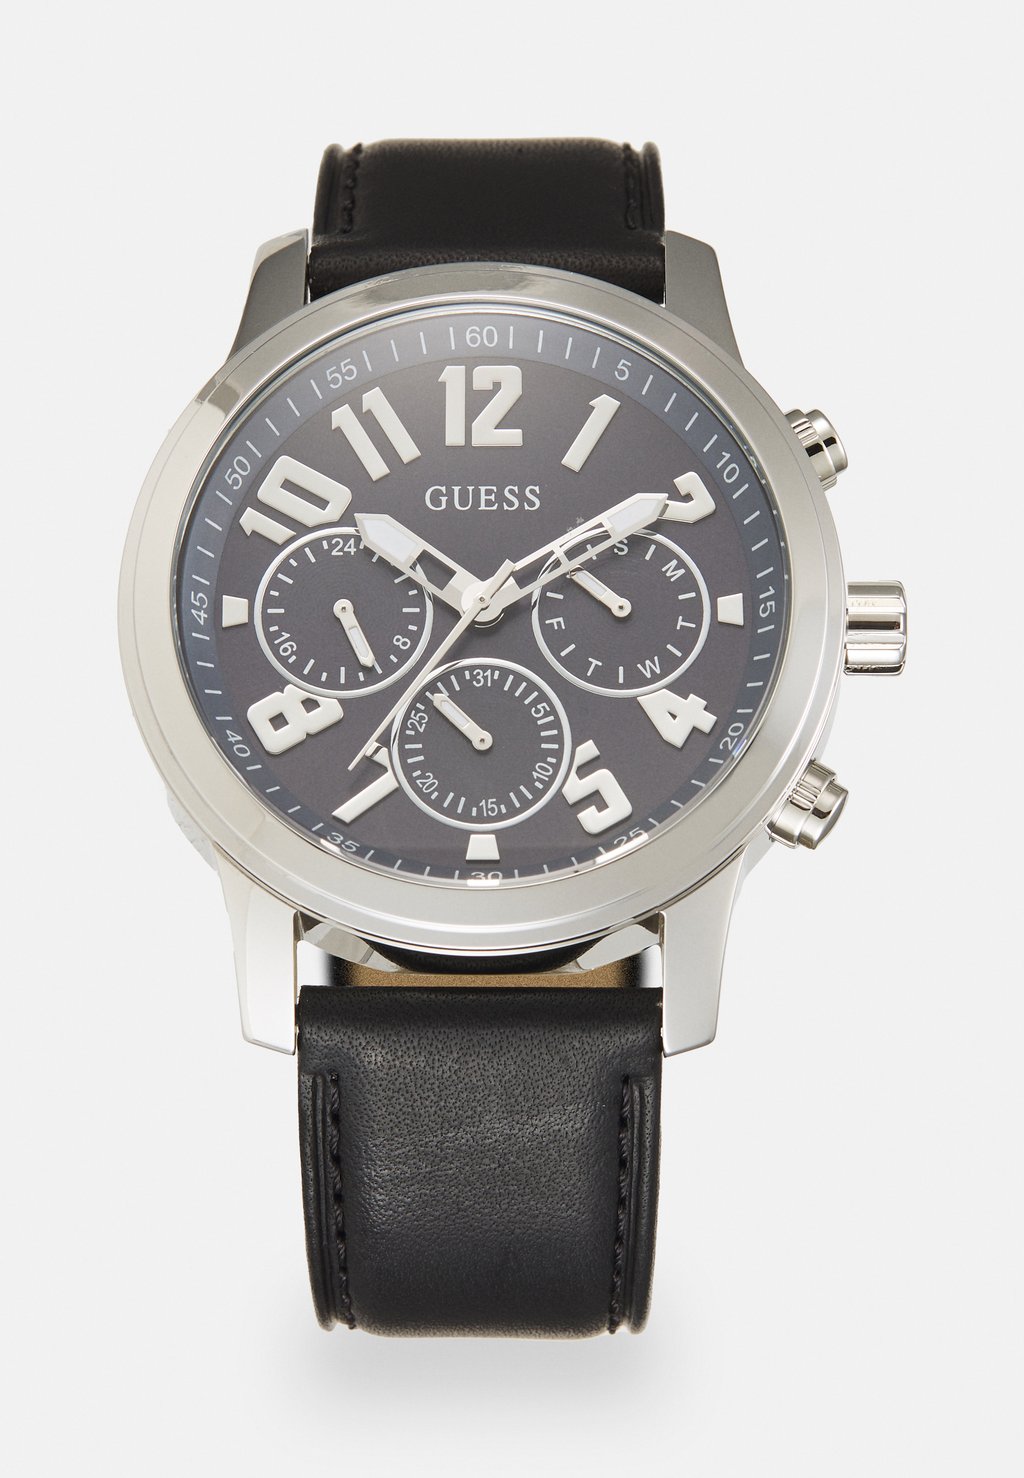 Часы PARKER Guess, цвет silver-coloured часы prodigy exclusive guess цвет silver coloured black